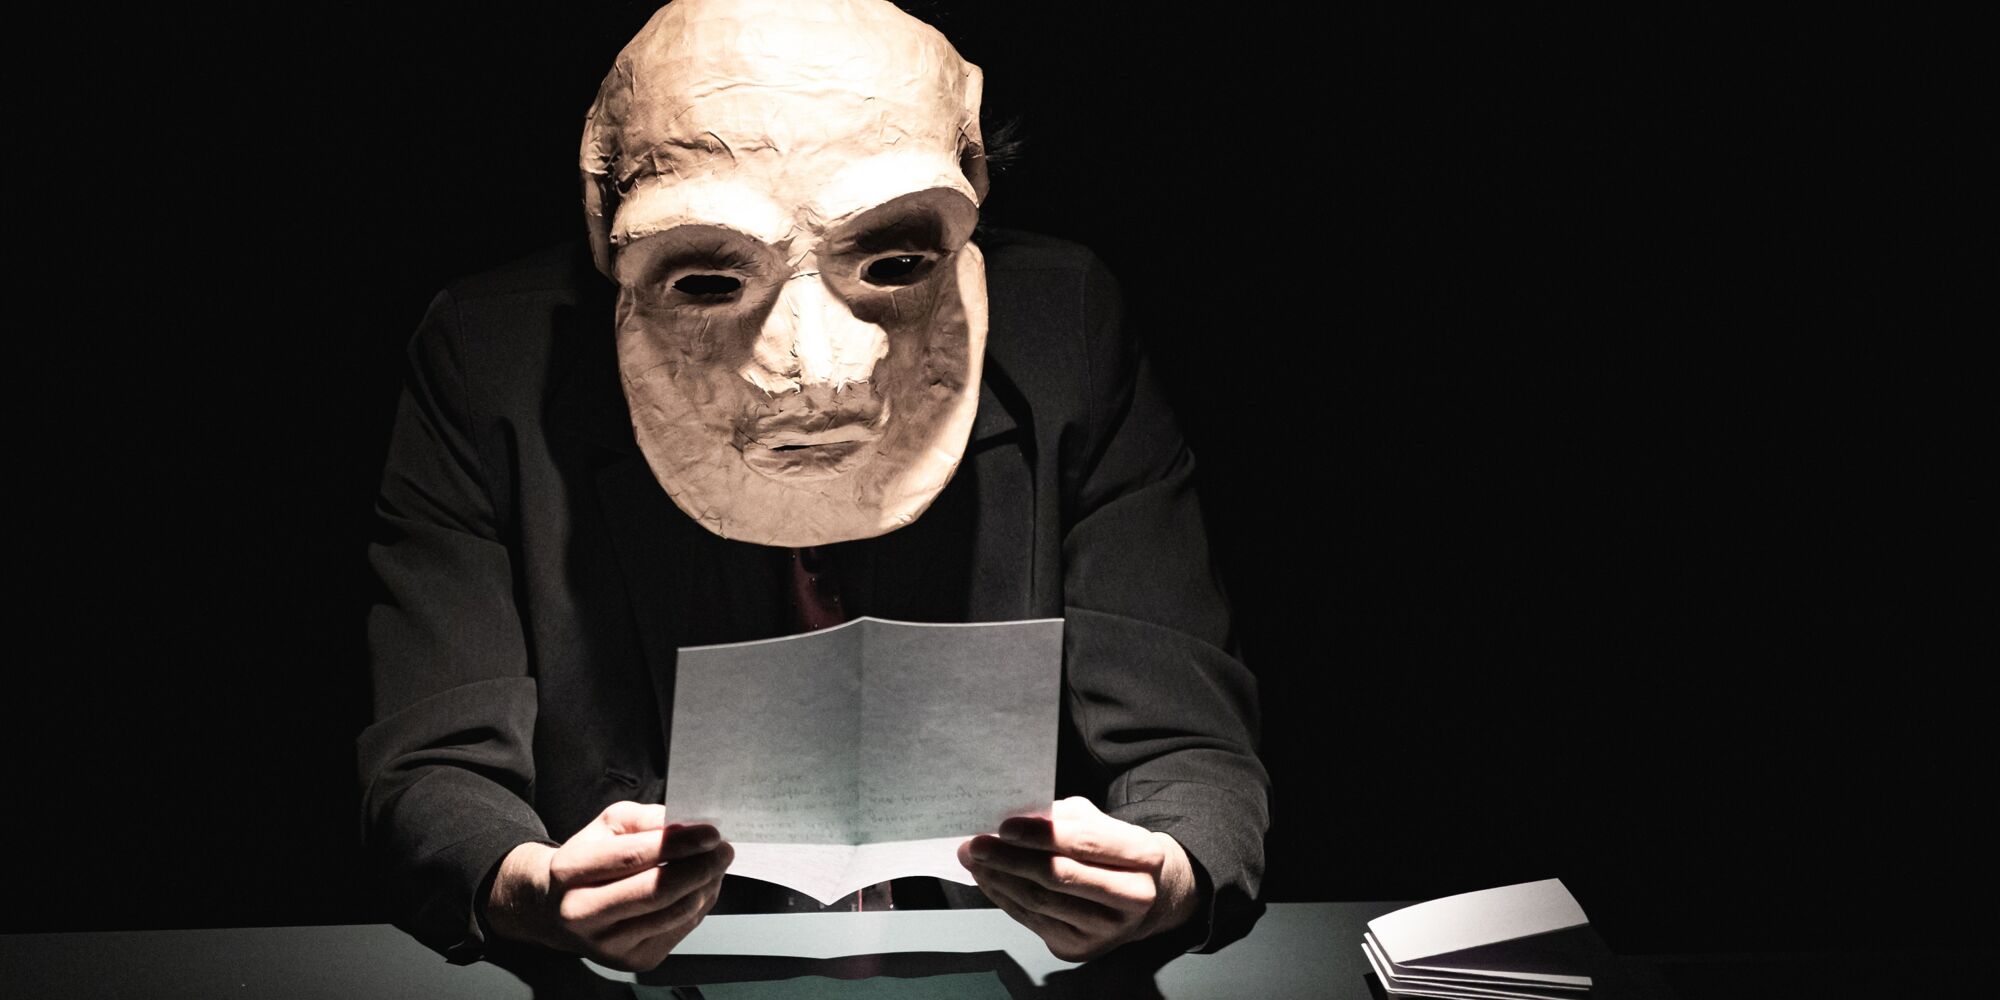 Hier sieht man einen der Darsteller unseres Benefizabends 2022. Er sitzt, trägt eine große Maske und liest einen Brief.